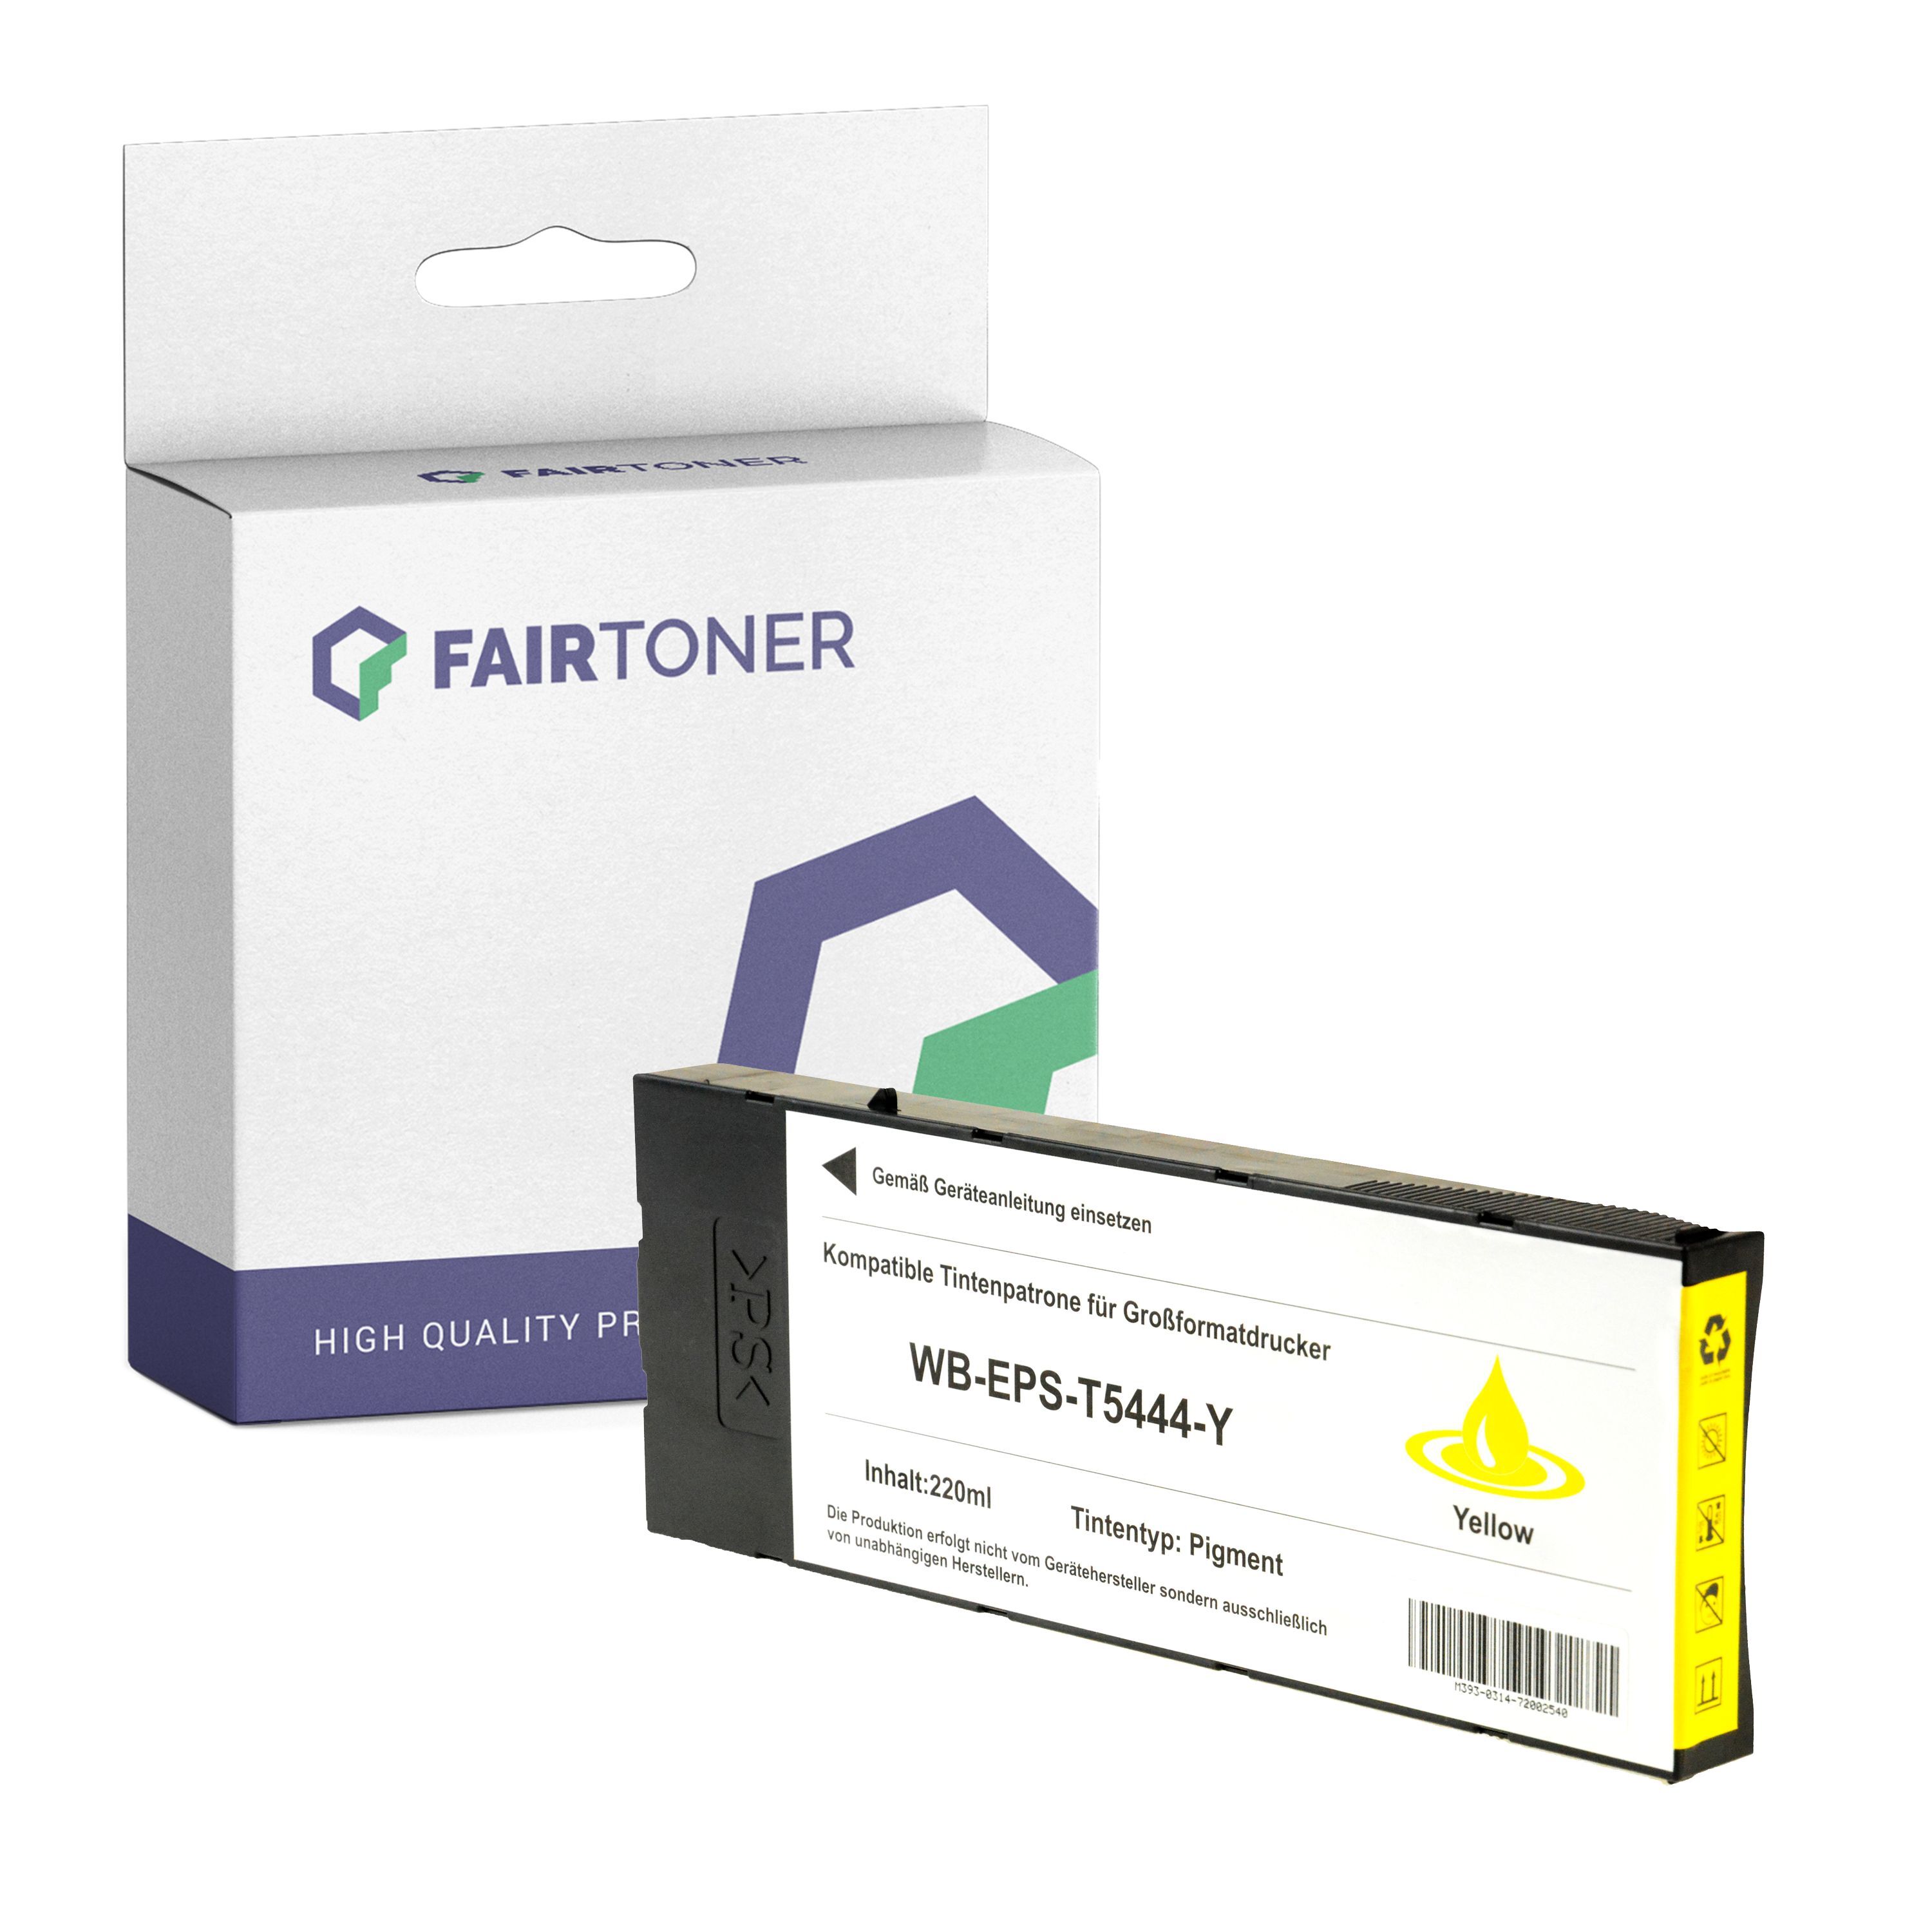 FairToner Kompatibel zu Epson Stylus Pro 4000 C 4 (C13T544400 / T5444) Druckerpatrone Gelb